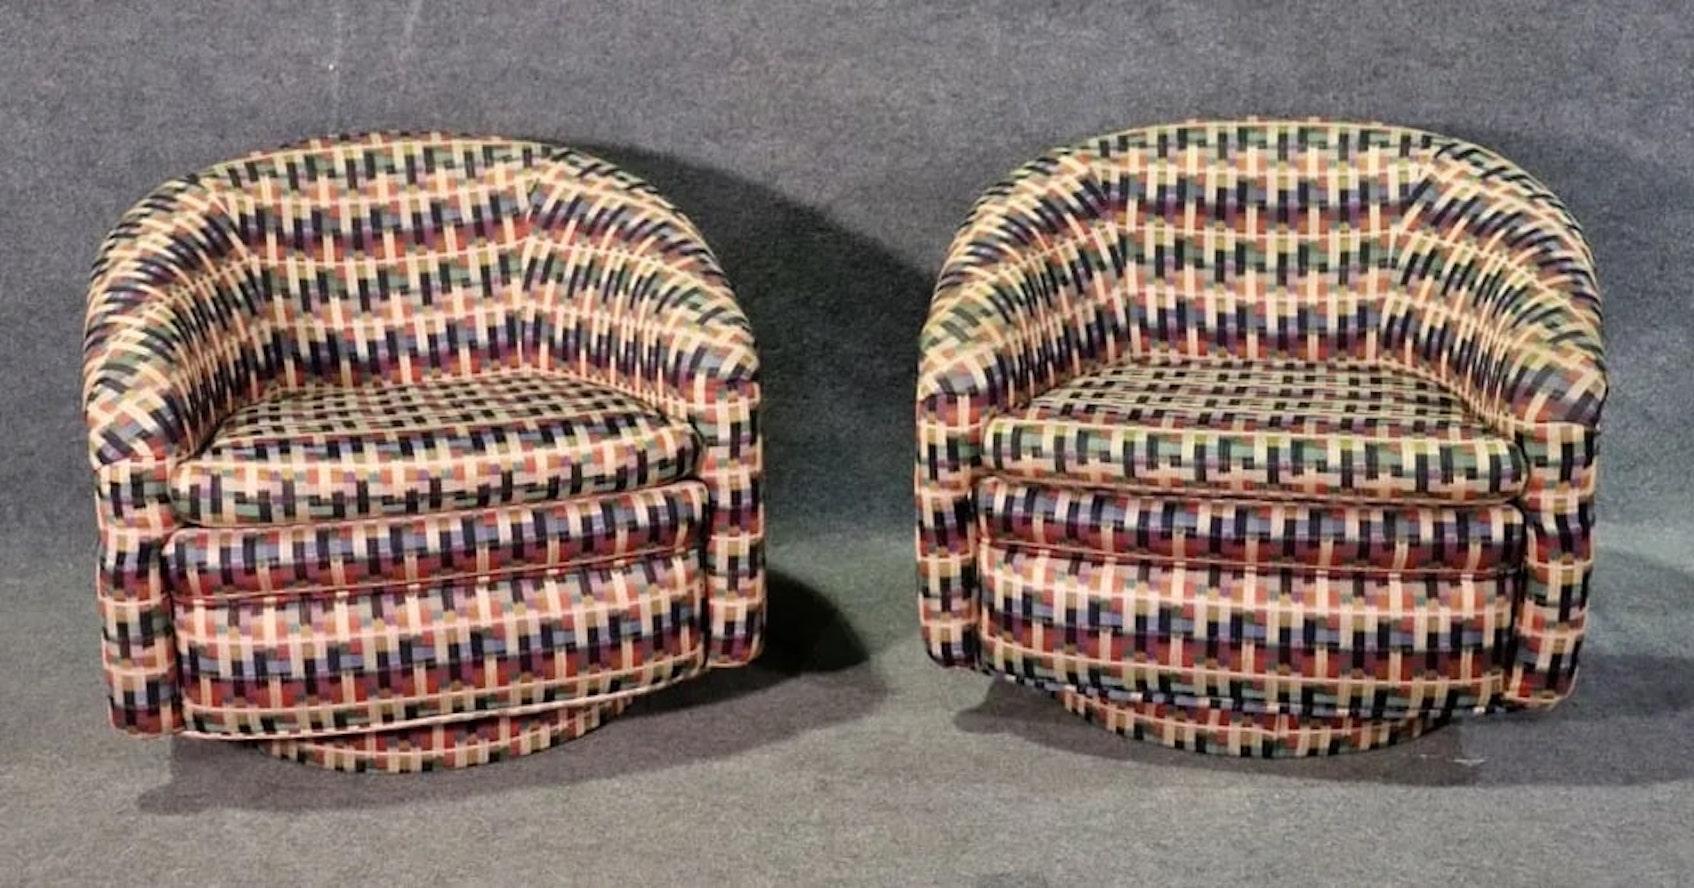 Paire de chaises modernes vintage à dossier rond sur bases pivotantes. Tissu à motifs amusants avec dossier confortable en forme de tonneau.
Veuillez confirmer le lieu NY ou NJ